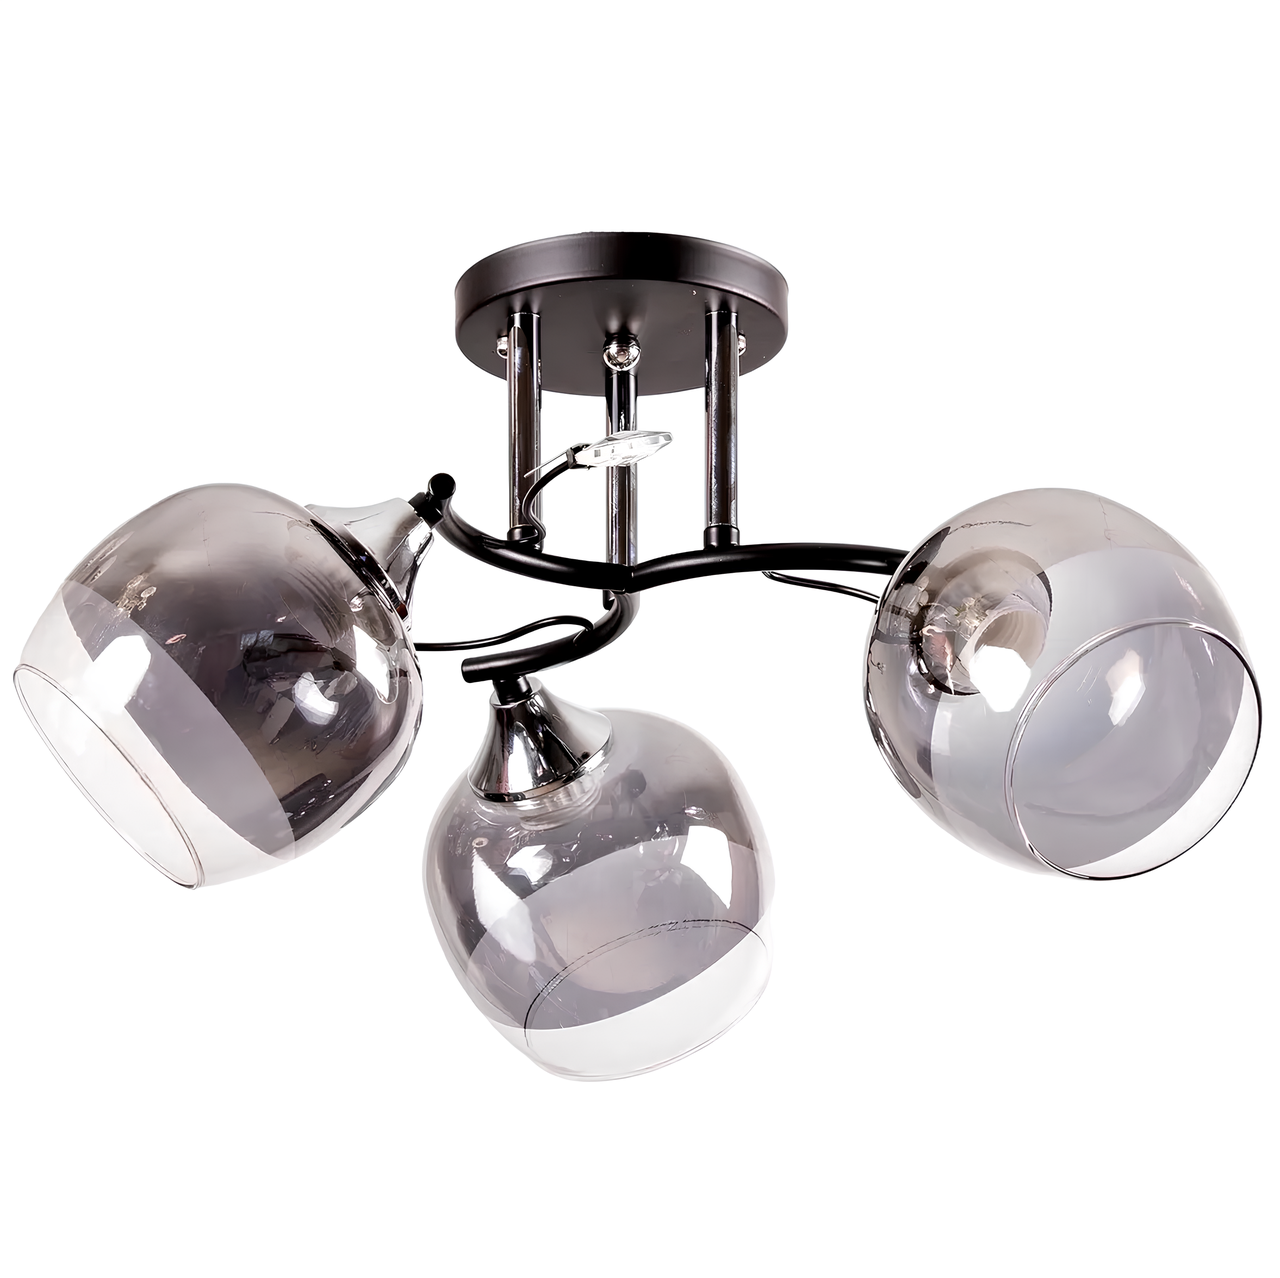 Стельова люстра на три лампи Е27 з прозоро-хромовими плафонами округлої форми Svet SR-C1037/3 BK+CH